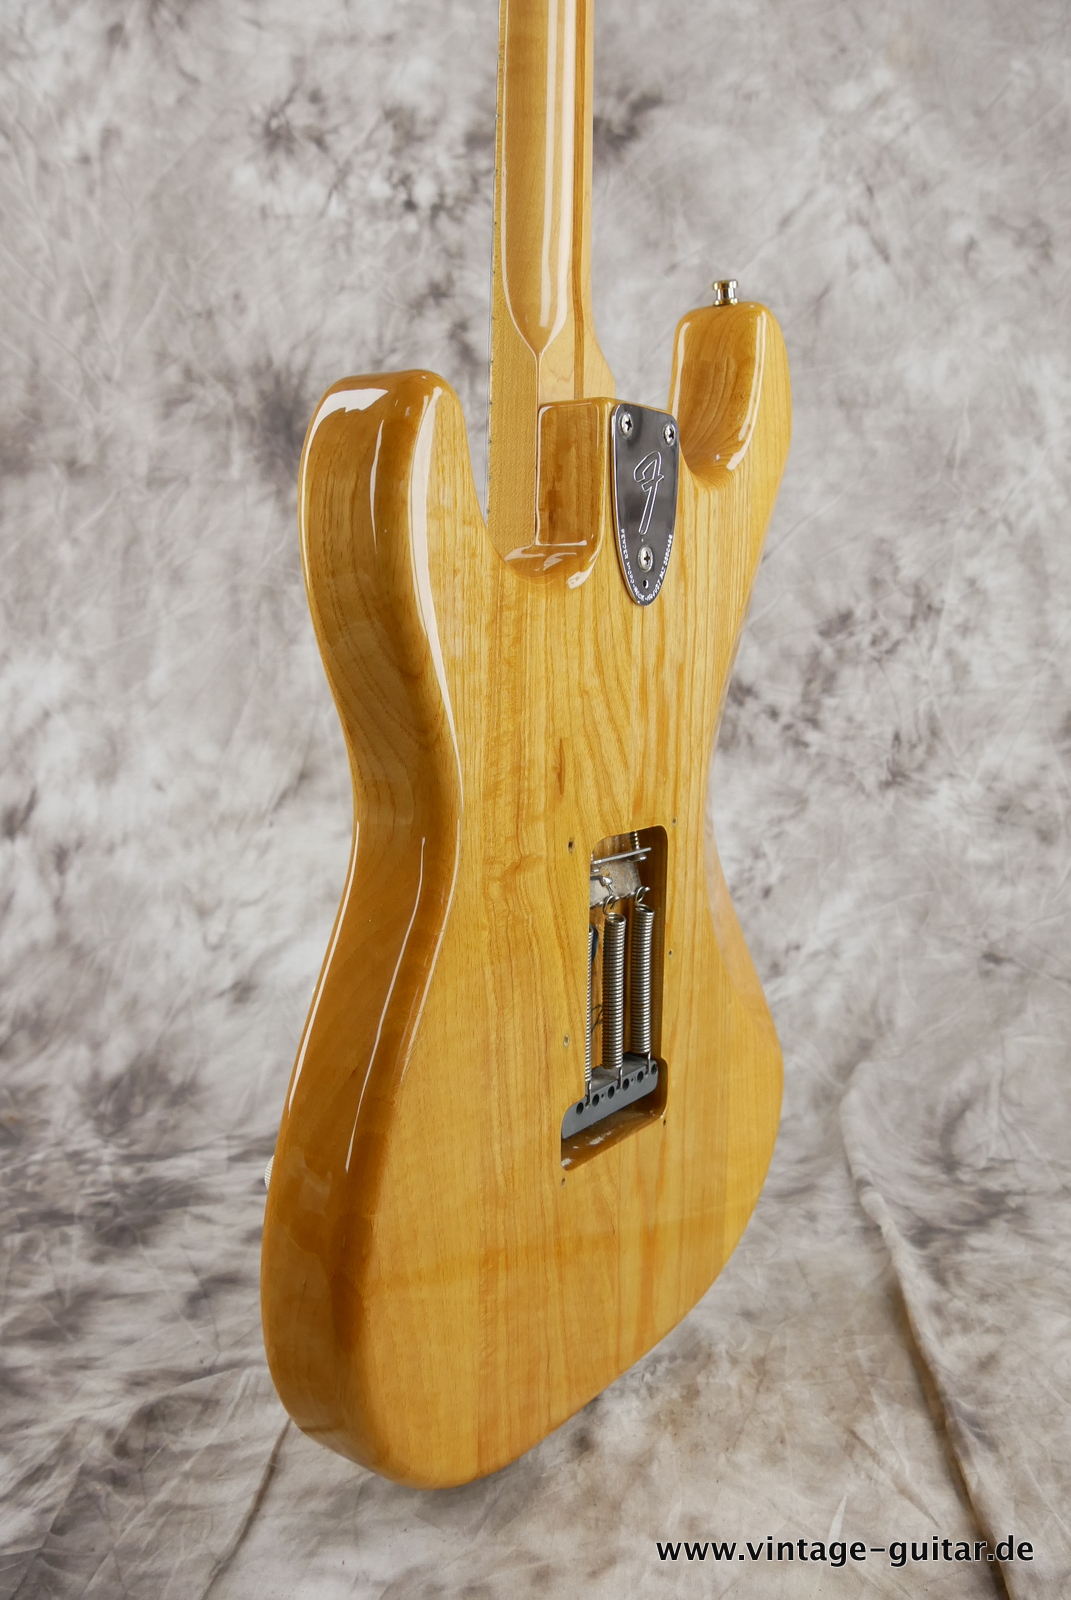 Fender_Stratocaster_70s_reissue_maple_neck_1999_Mexico-007.JPG